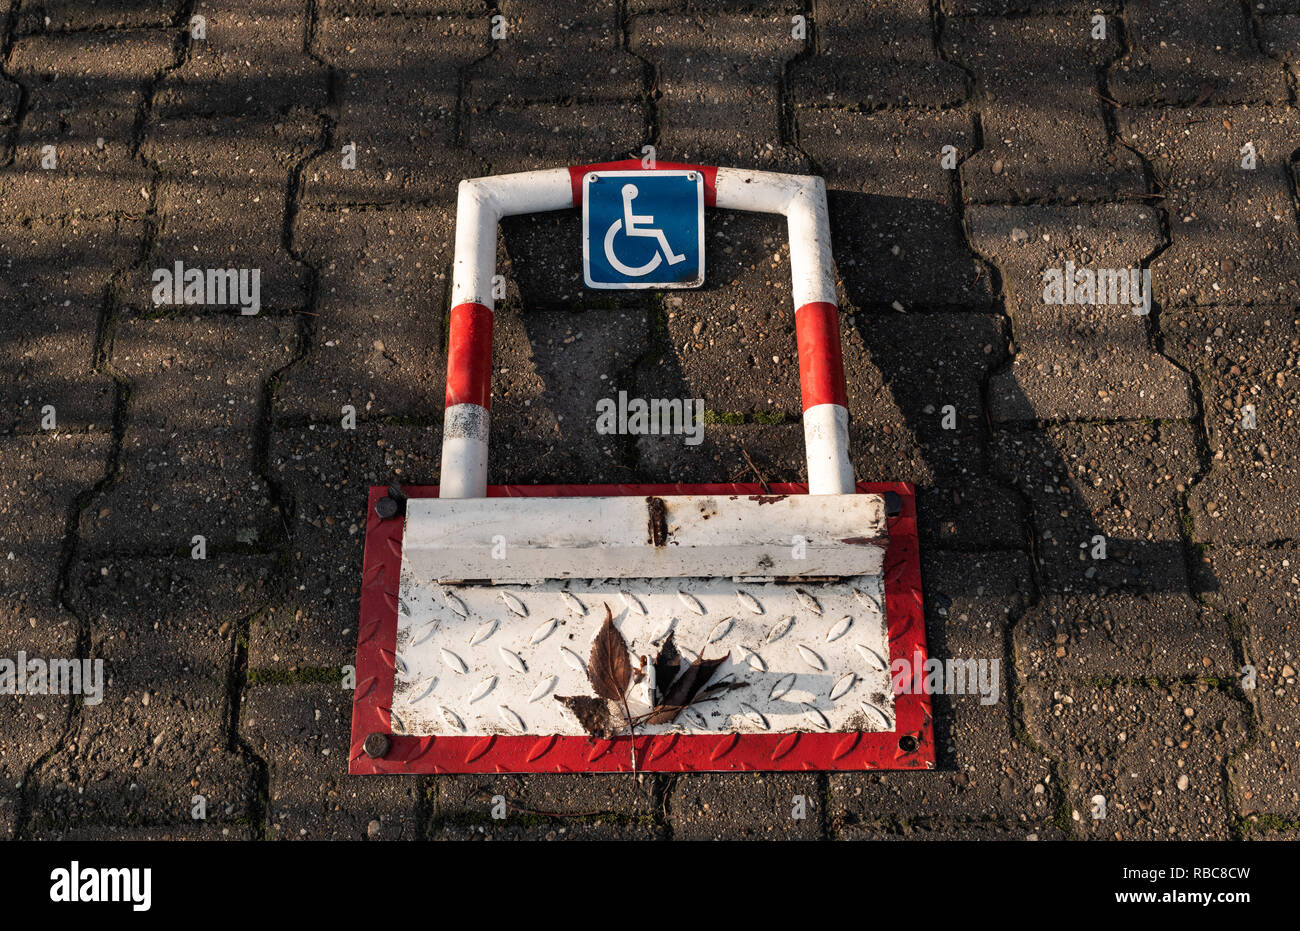 Persona con Discapacidad aparcamiento cerca del protector Foto de stock